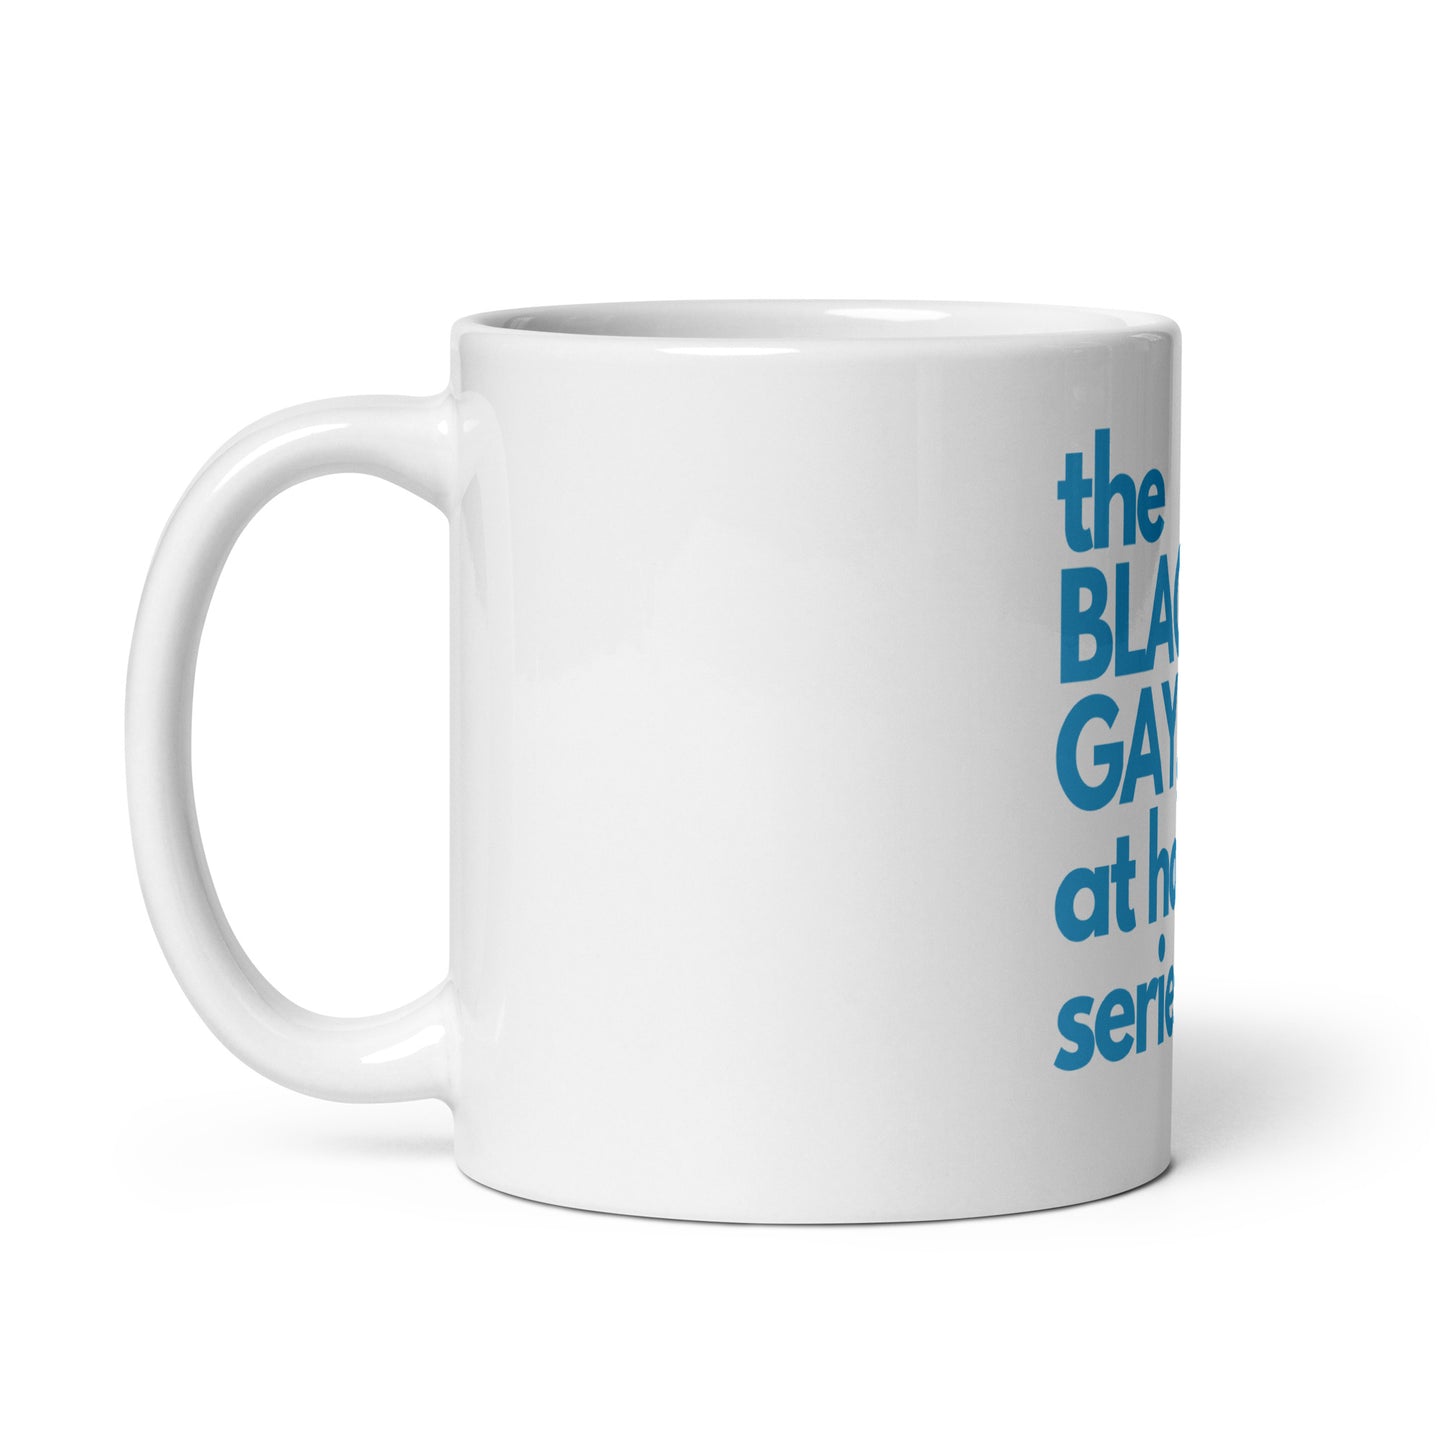 BGSAH Series glossy mug